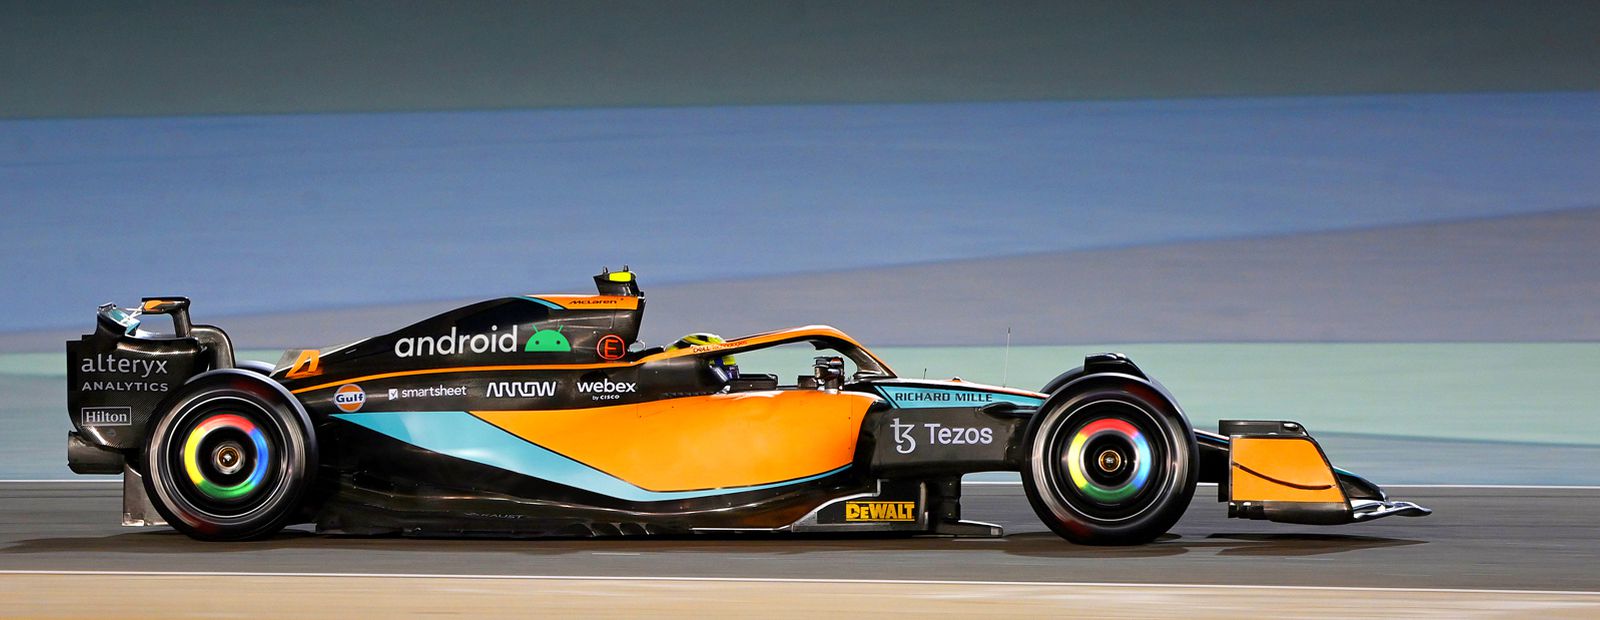 F1 : McLaren roule maintenant aux couleurs Google !